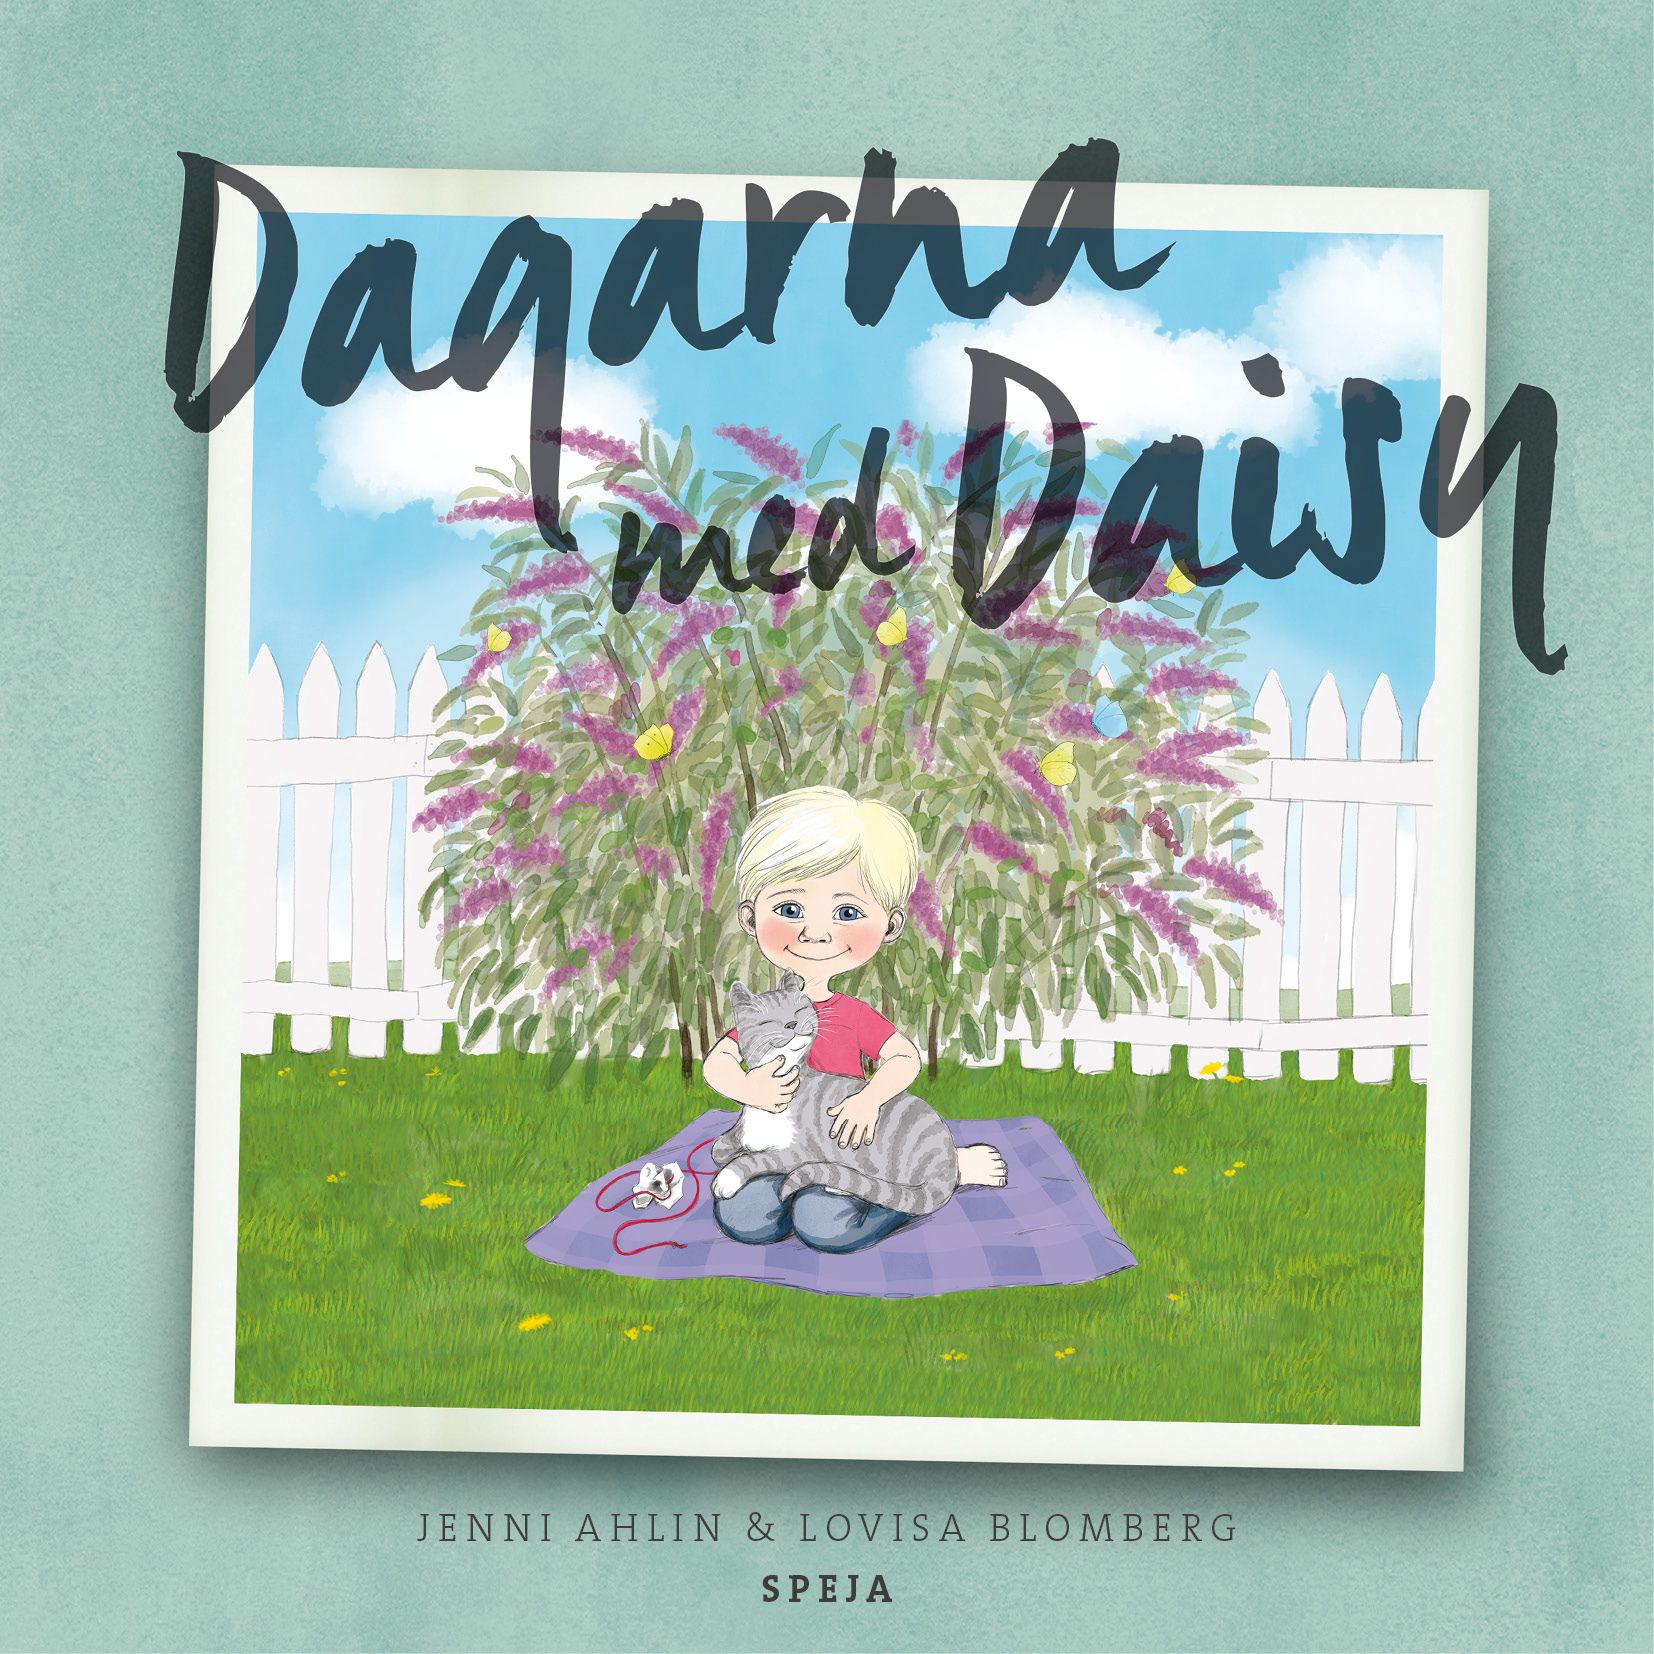 Dagarna med Daisy, ljudbok av Jenny Ahlin